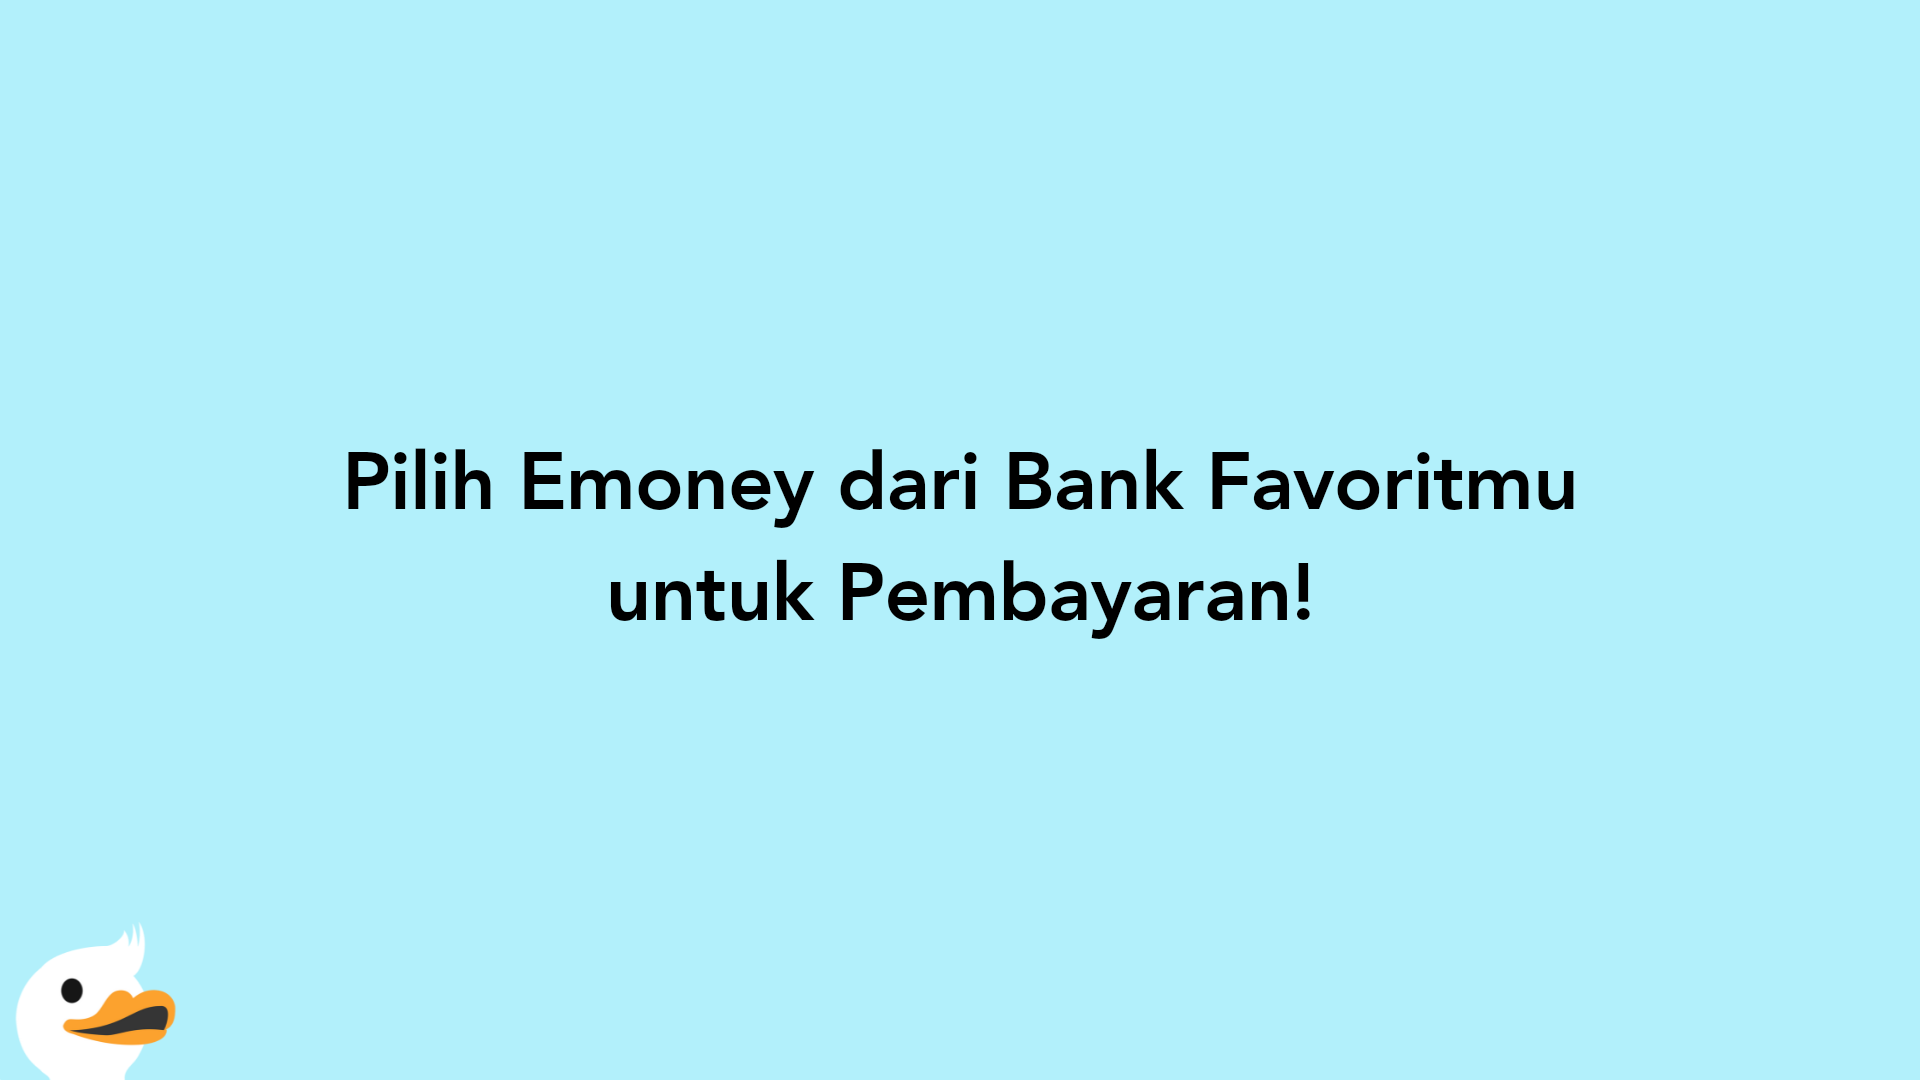 Pilih Emoney dari Bank Favoritmu untuk Pembayaran!